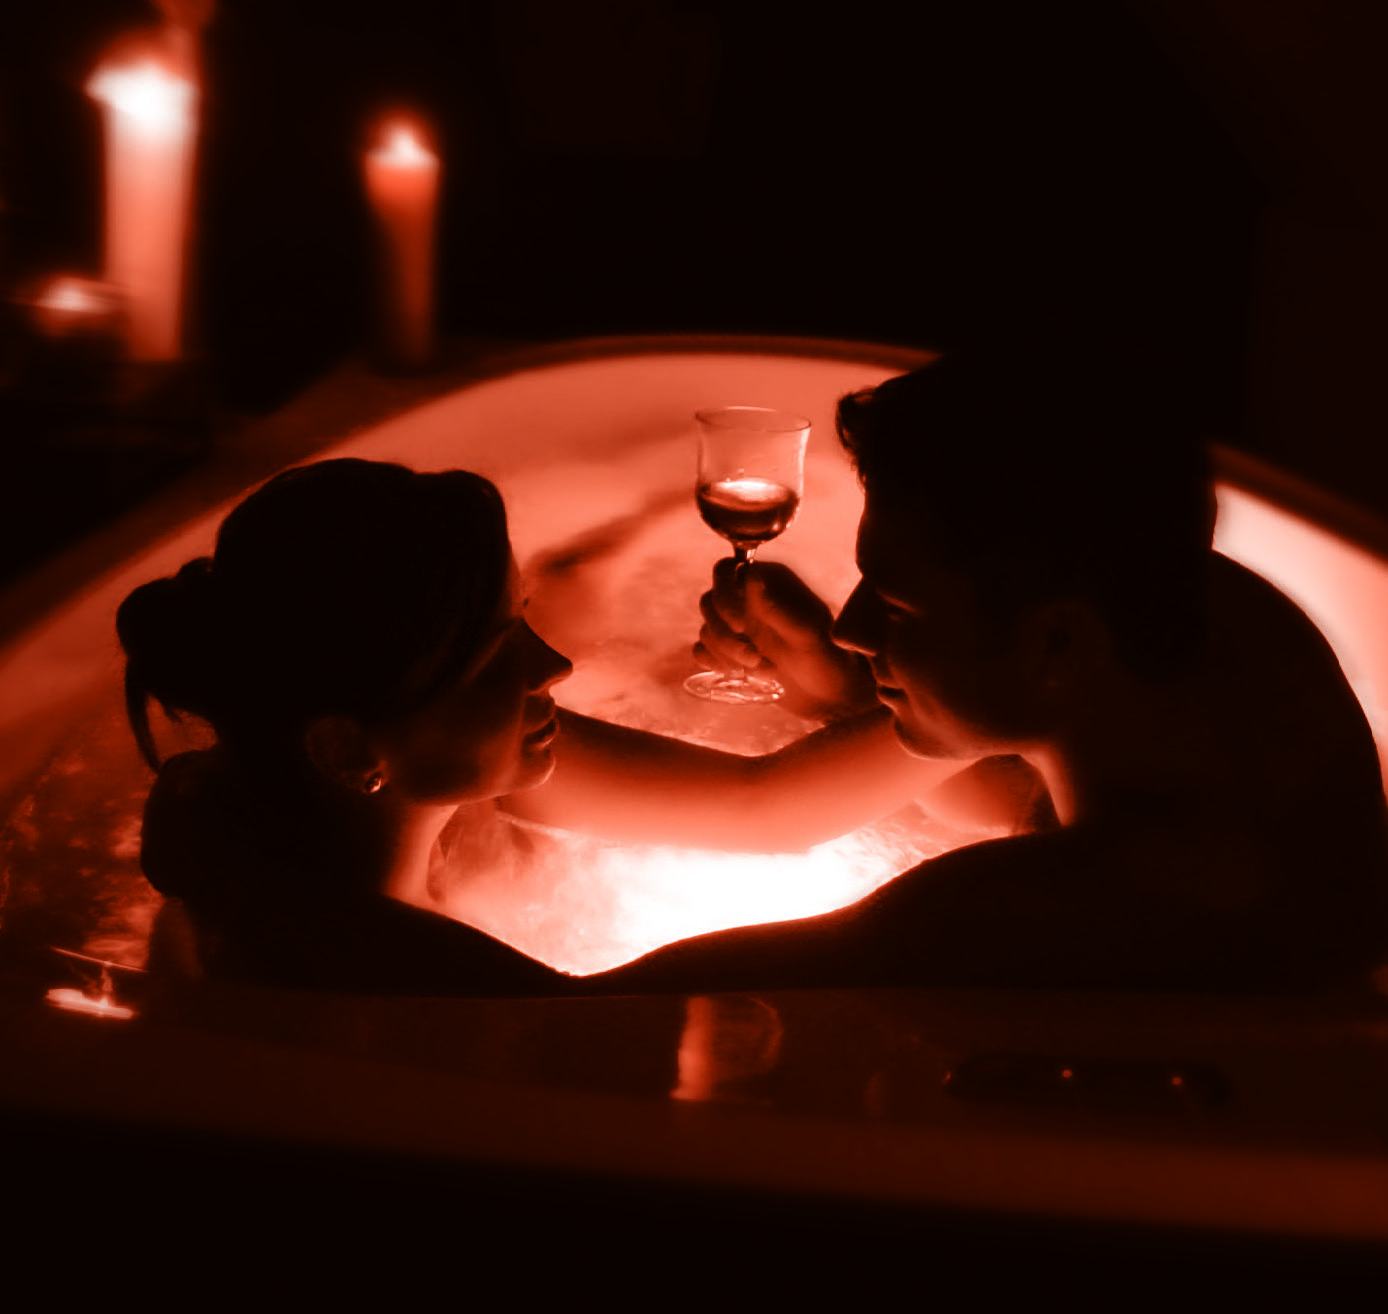 A romantikus Valentin-napi fürdőzés közben nagyon hamar megszomjazhatnak, az alkohol dehidratáló hatása pedig fokozódik. Készítsen kéz közelbe elegendő ivóvizet!